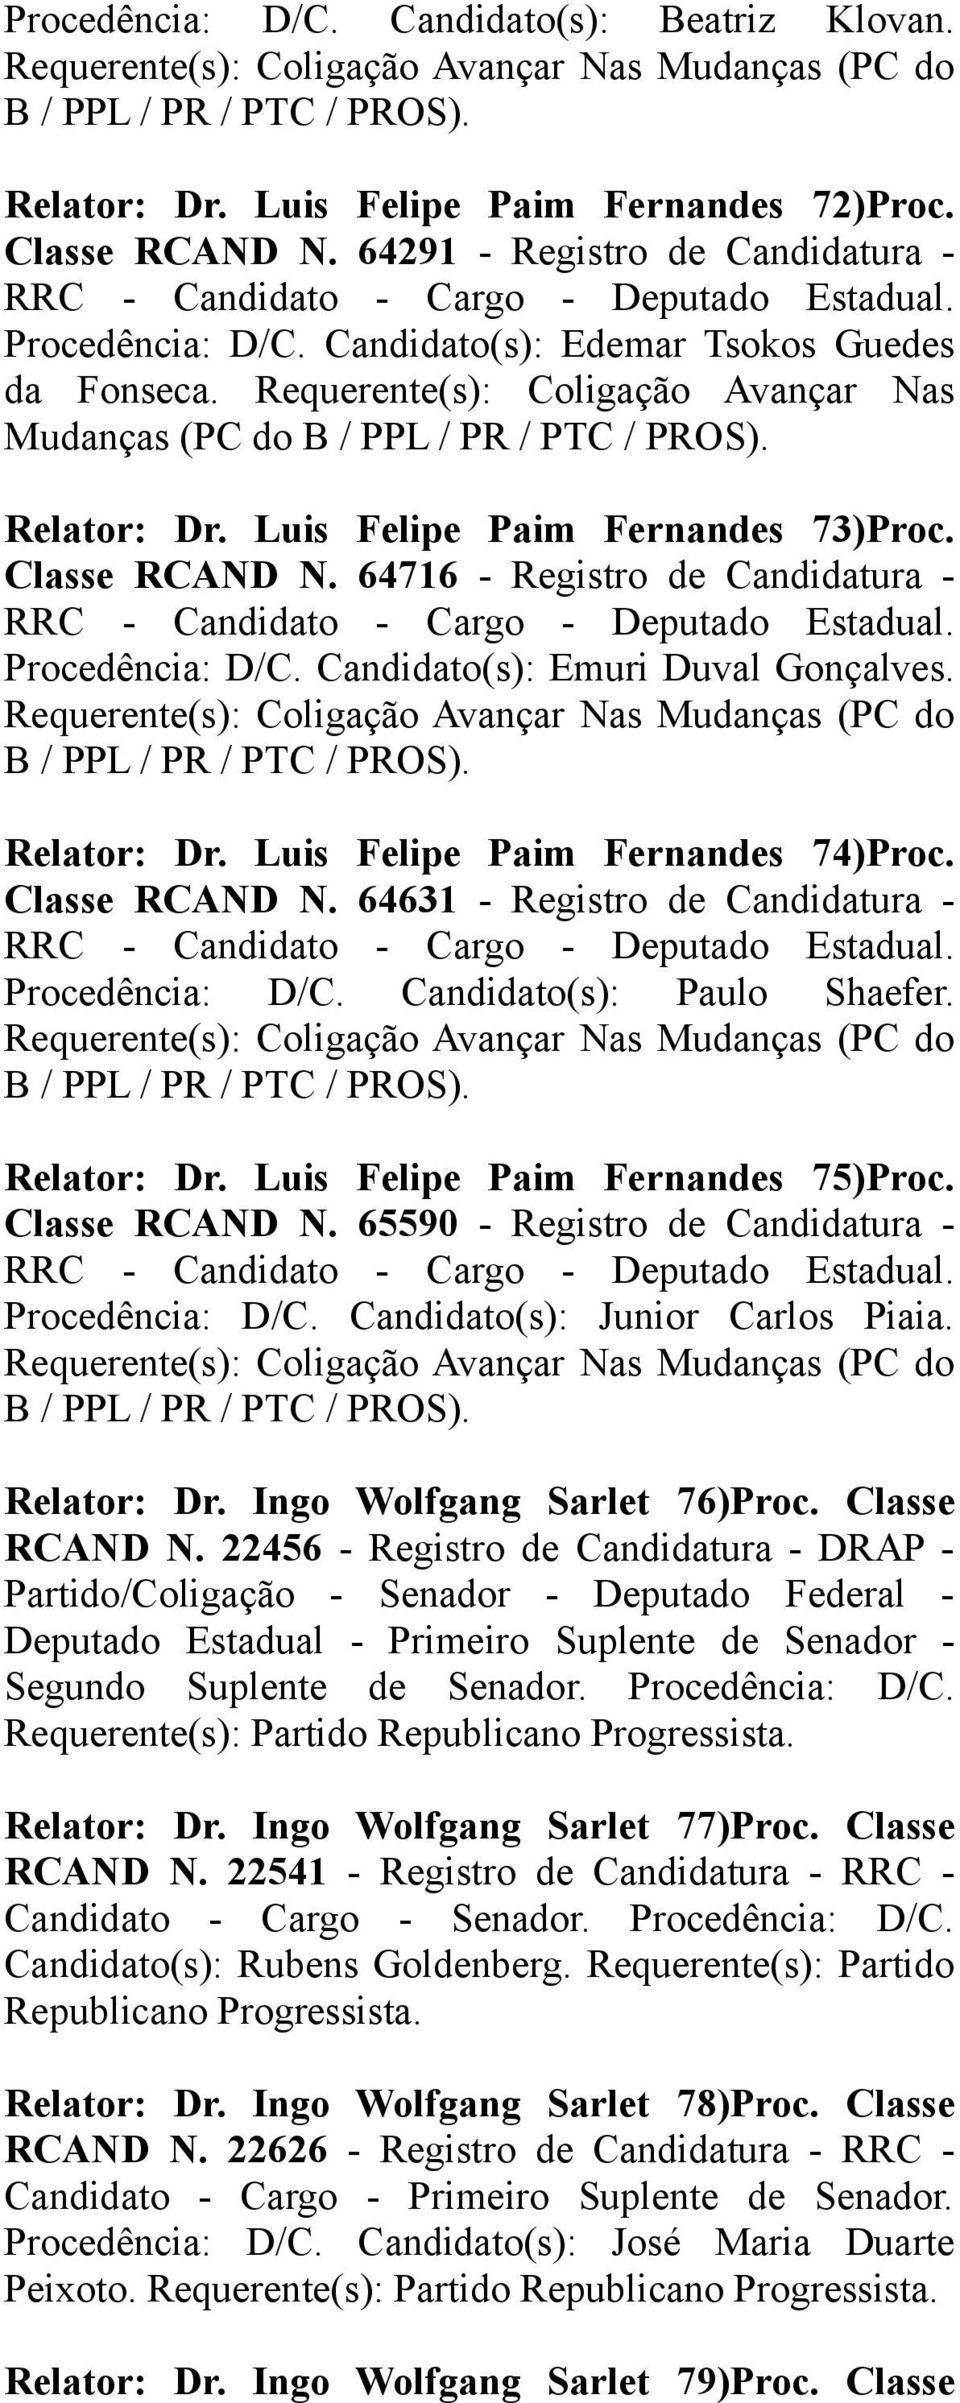 Luis Felipe Paim Fernandes 73)Proc. Classe RCAND N. 64716 - Registro de Candidatura - Procedência: D/C. Candidato(s): Emuri Duval Gonçalves.